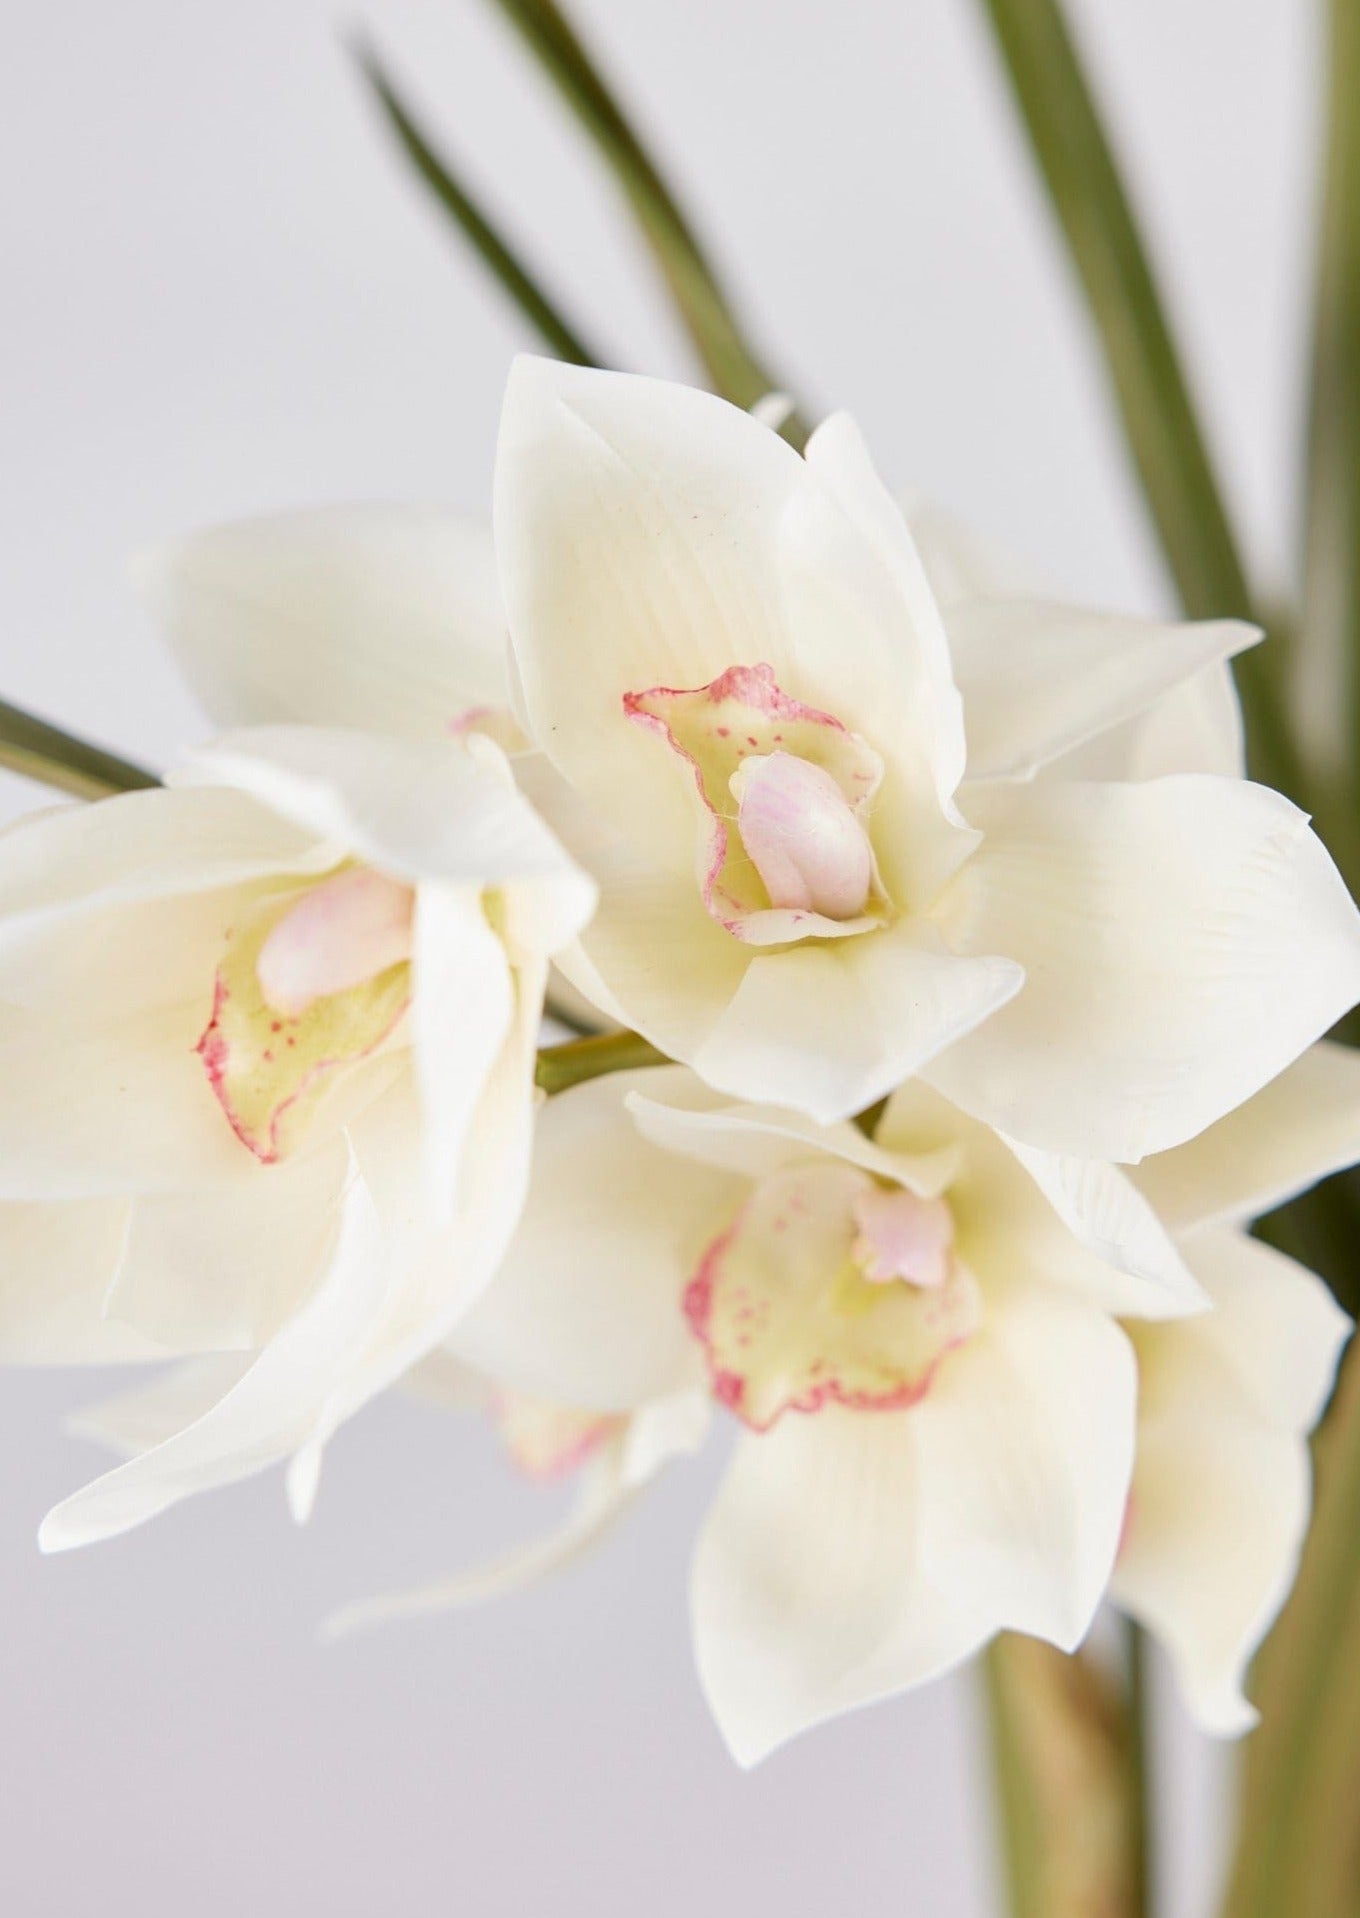 Afloral Faux Orchid Flower Arrangement in Pot Closeup View